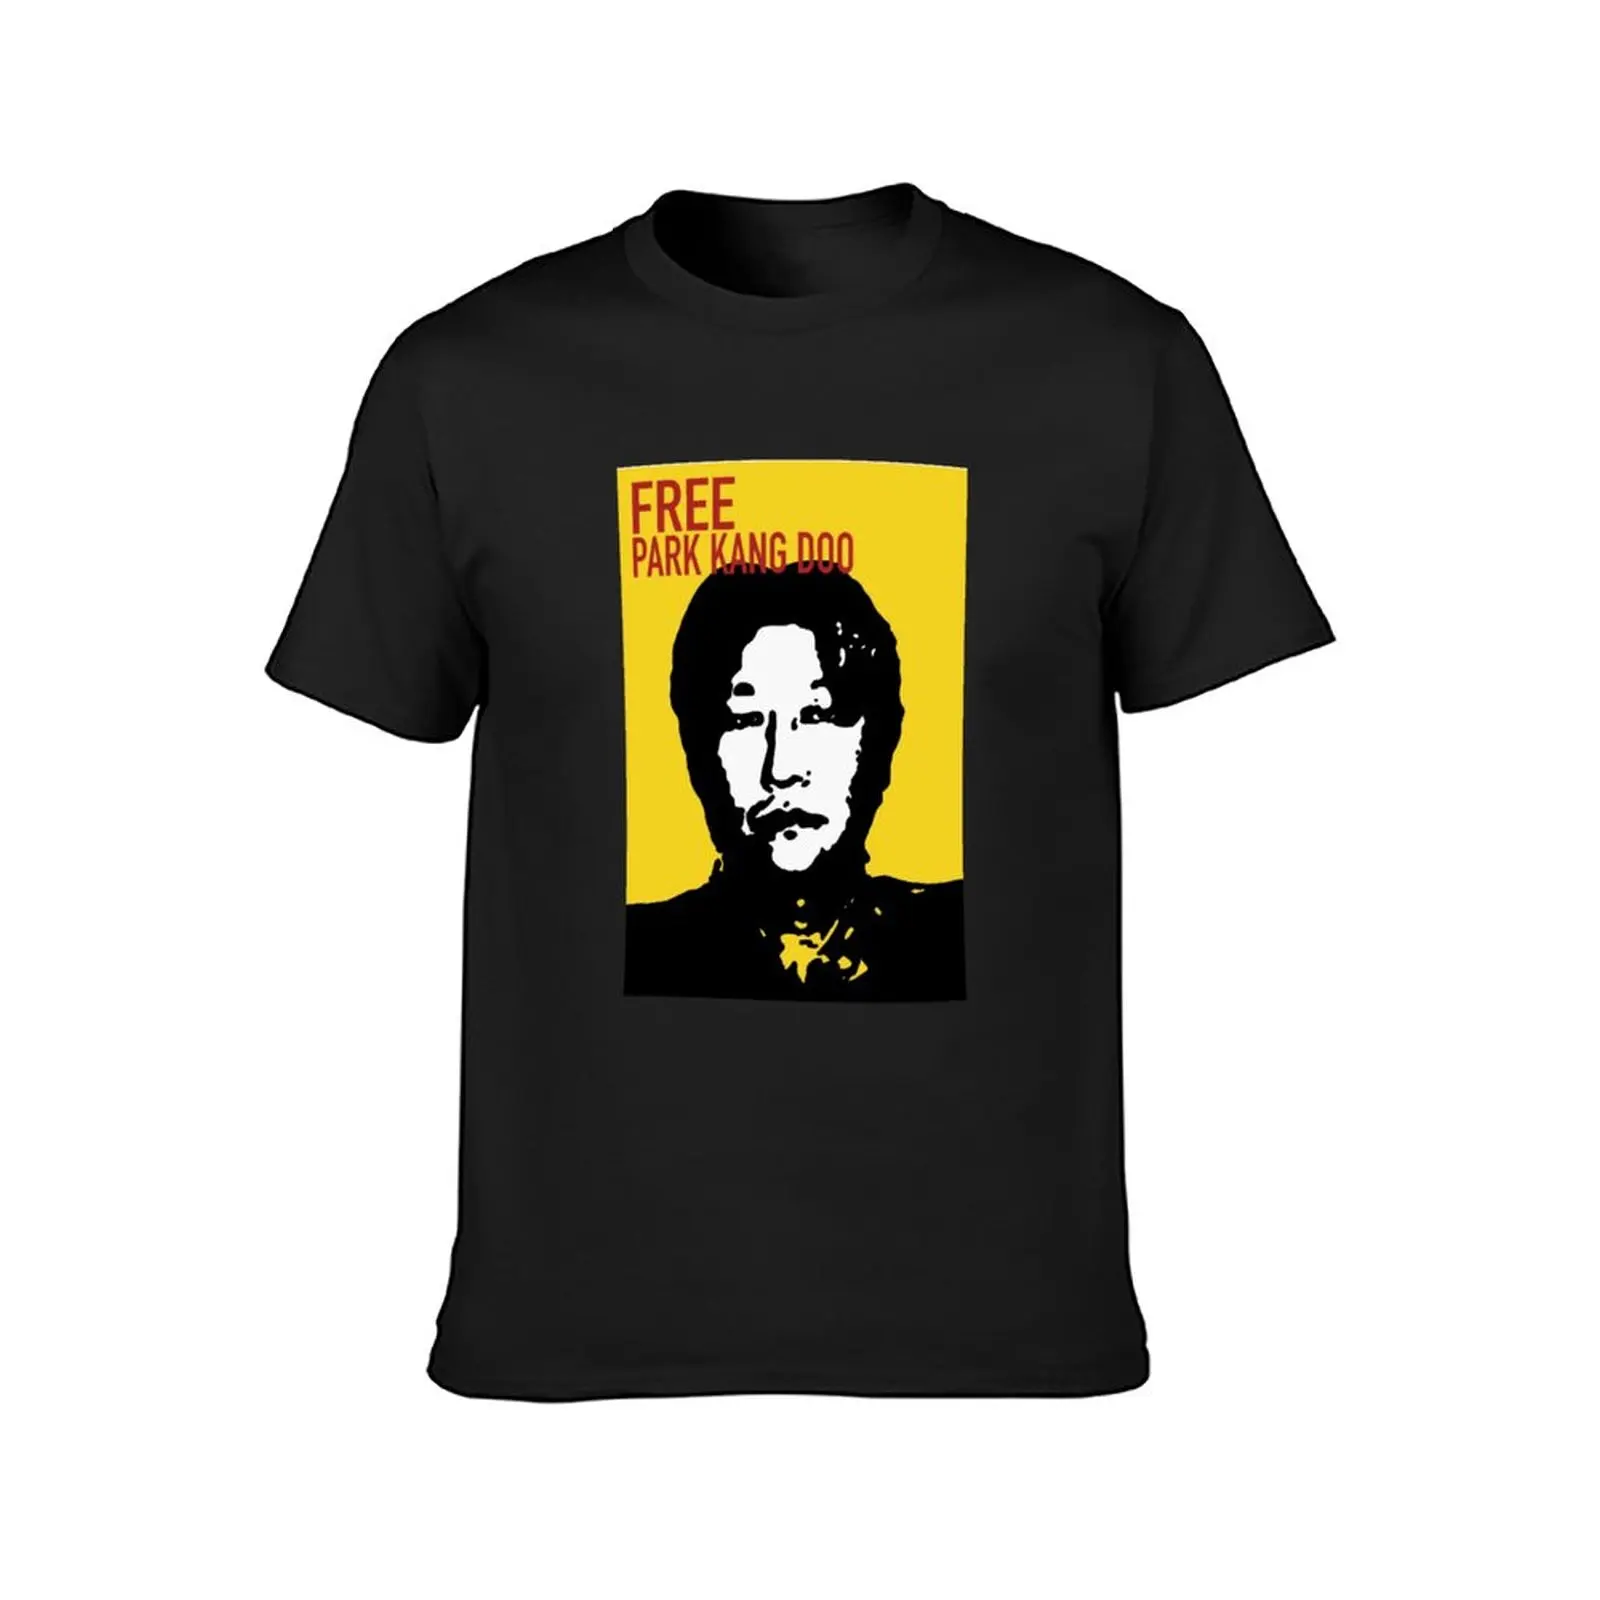 Бесплатная футболка Park Kang Doo, спортивные летние топы, мужские винтажные футболки. Изображение 1